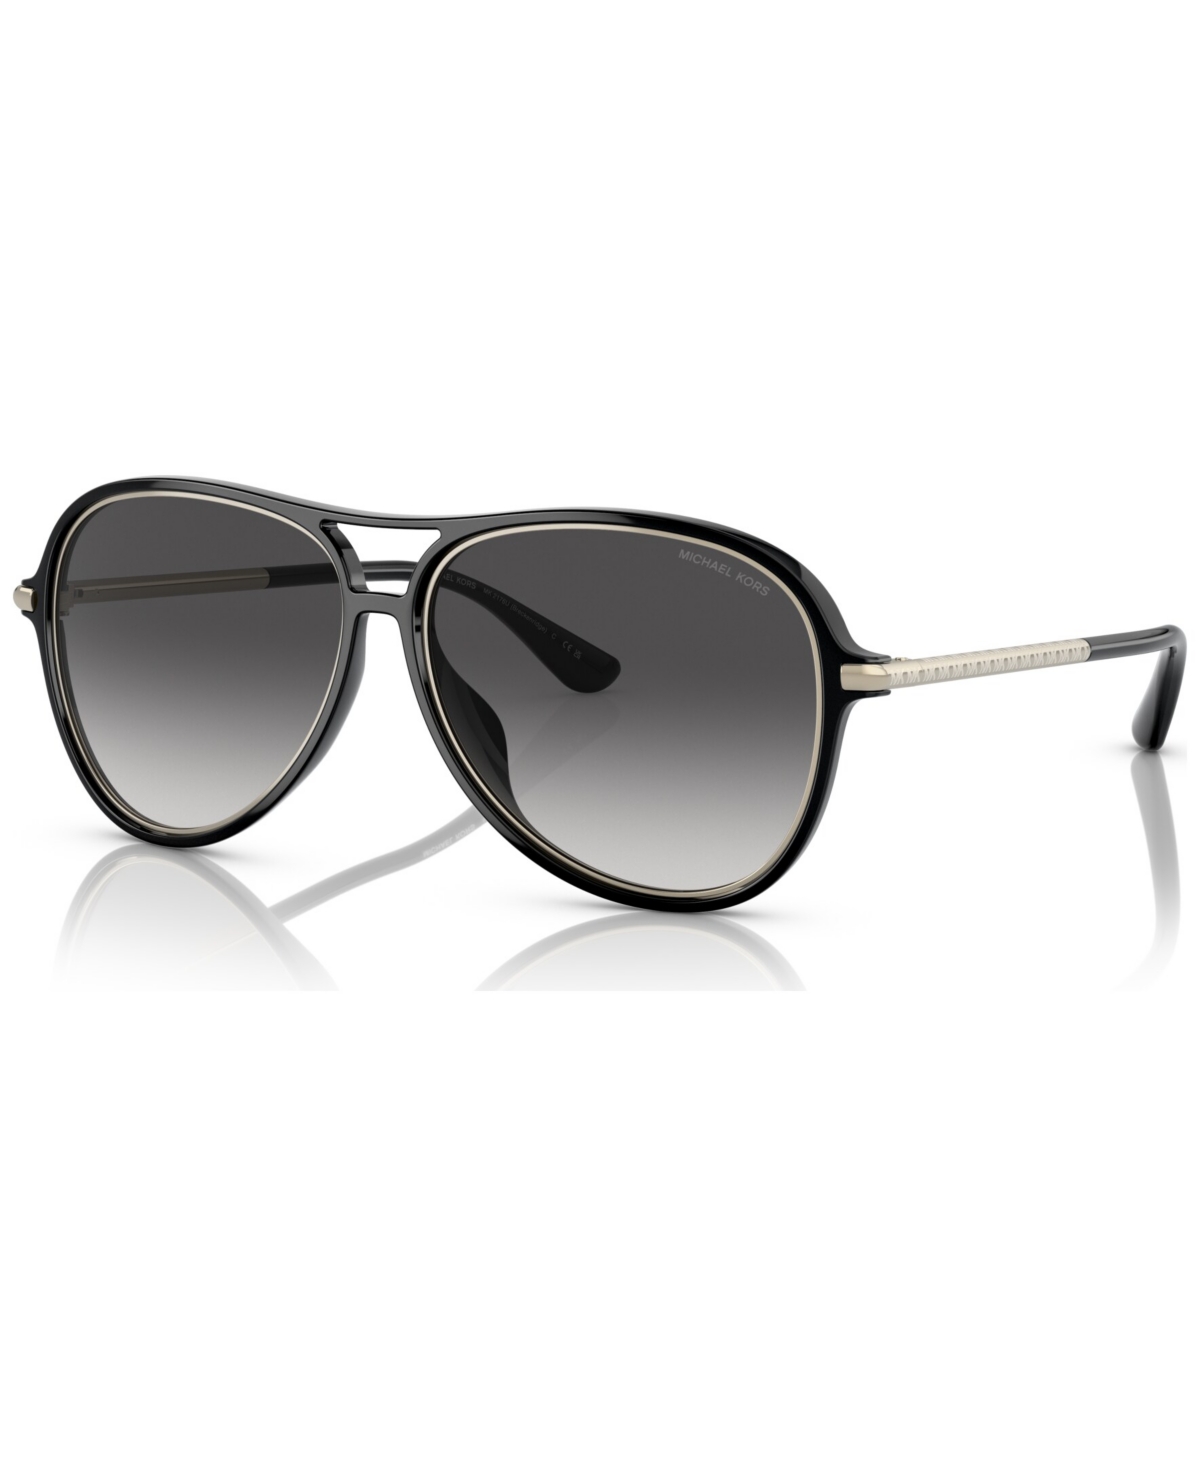 Michael Kors Women's Sunglasses, Mk2176 In Black